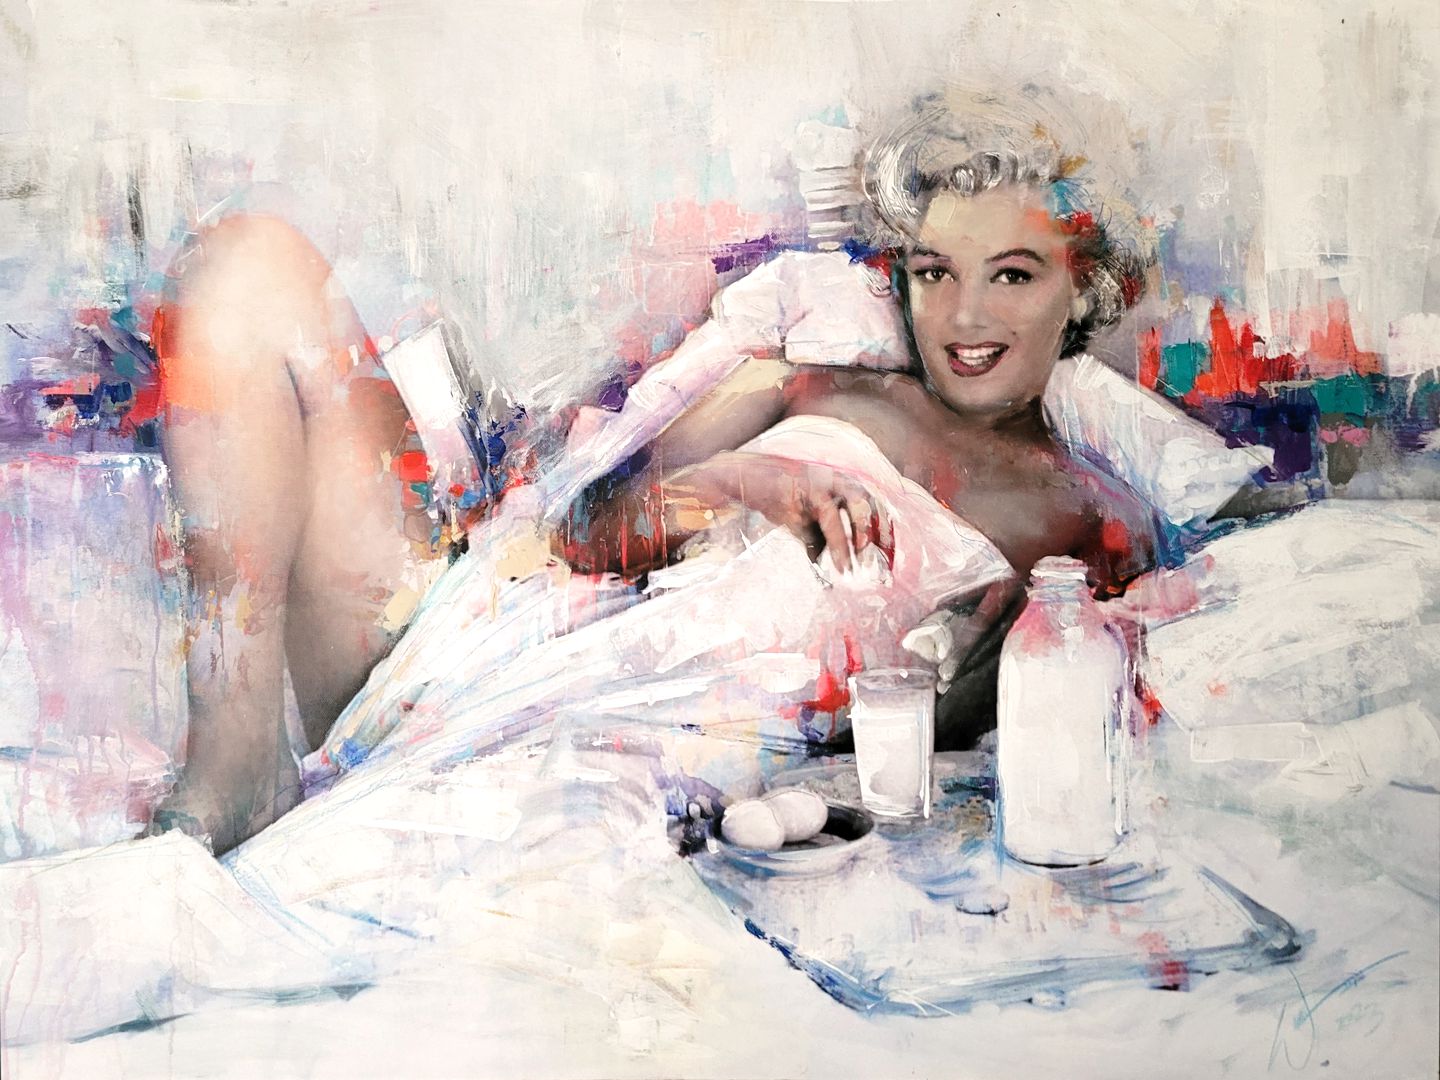 'Breakfast in Bed' (Marilyn Monroe) painting by artist, William III